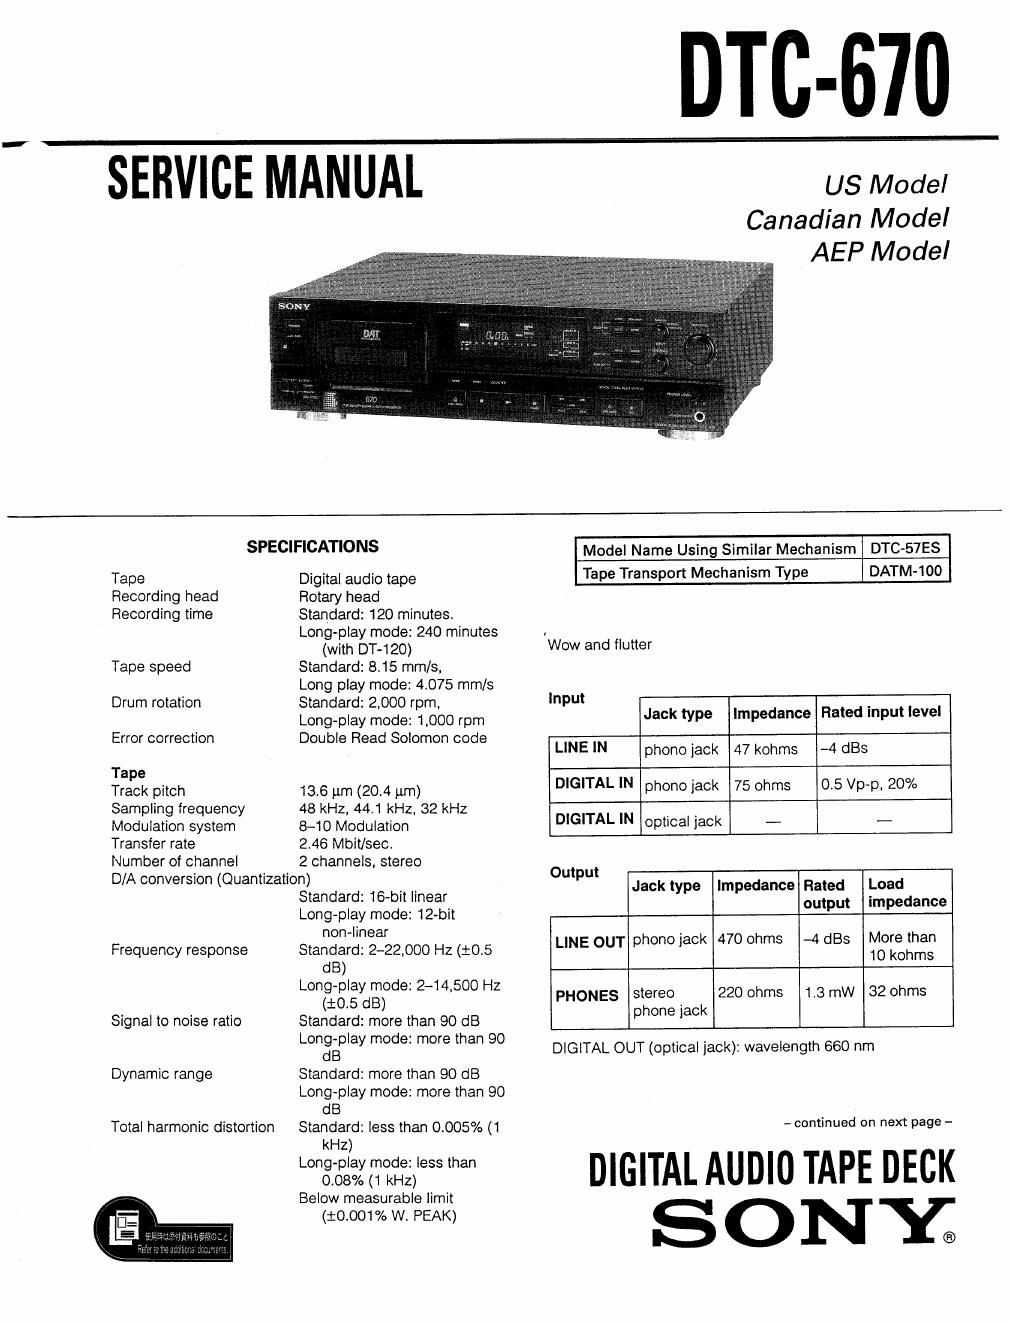 sony dtc 670 service manual